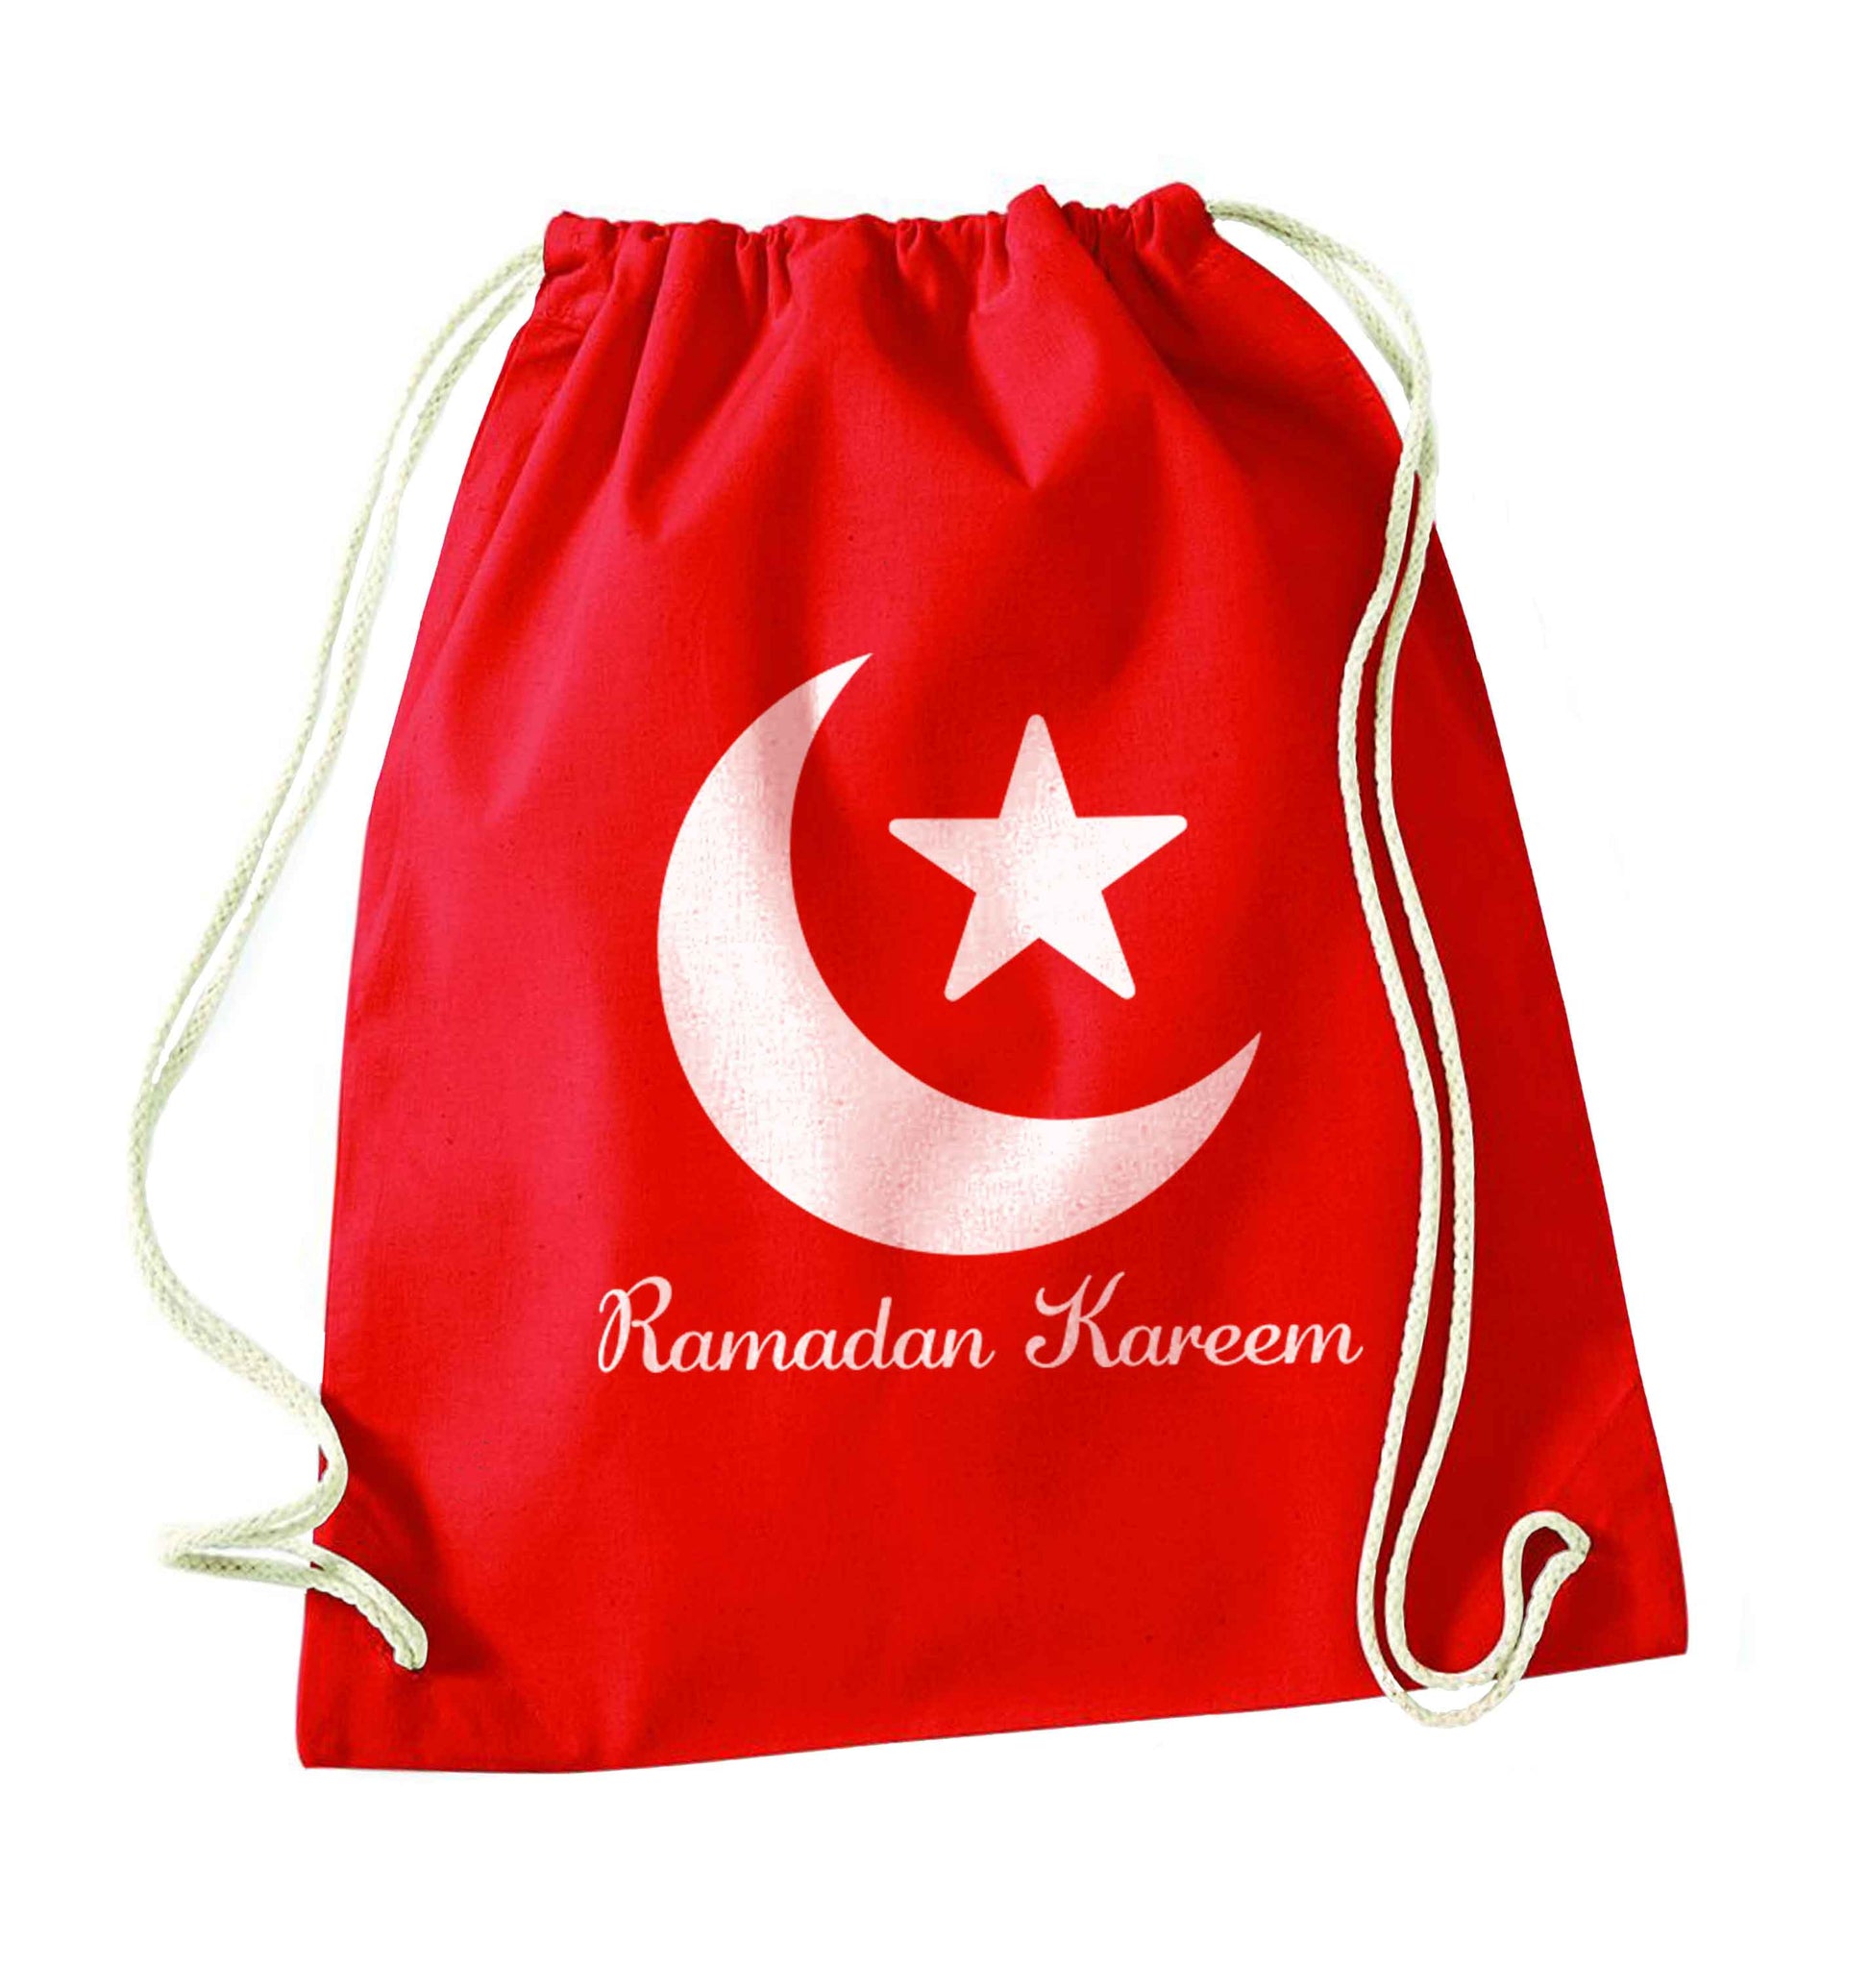 Ramadan kareem red drawstring bag 